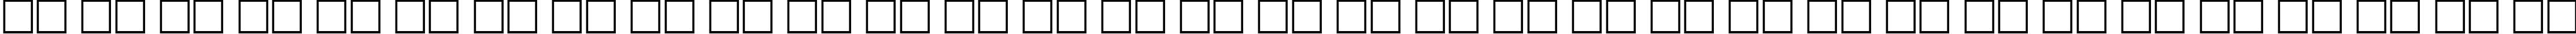 Пример написания русского алфавита шрифтом PragmaticaCTT Bold70b